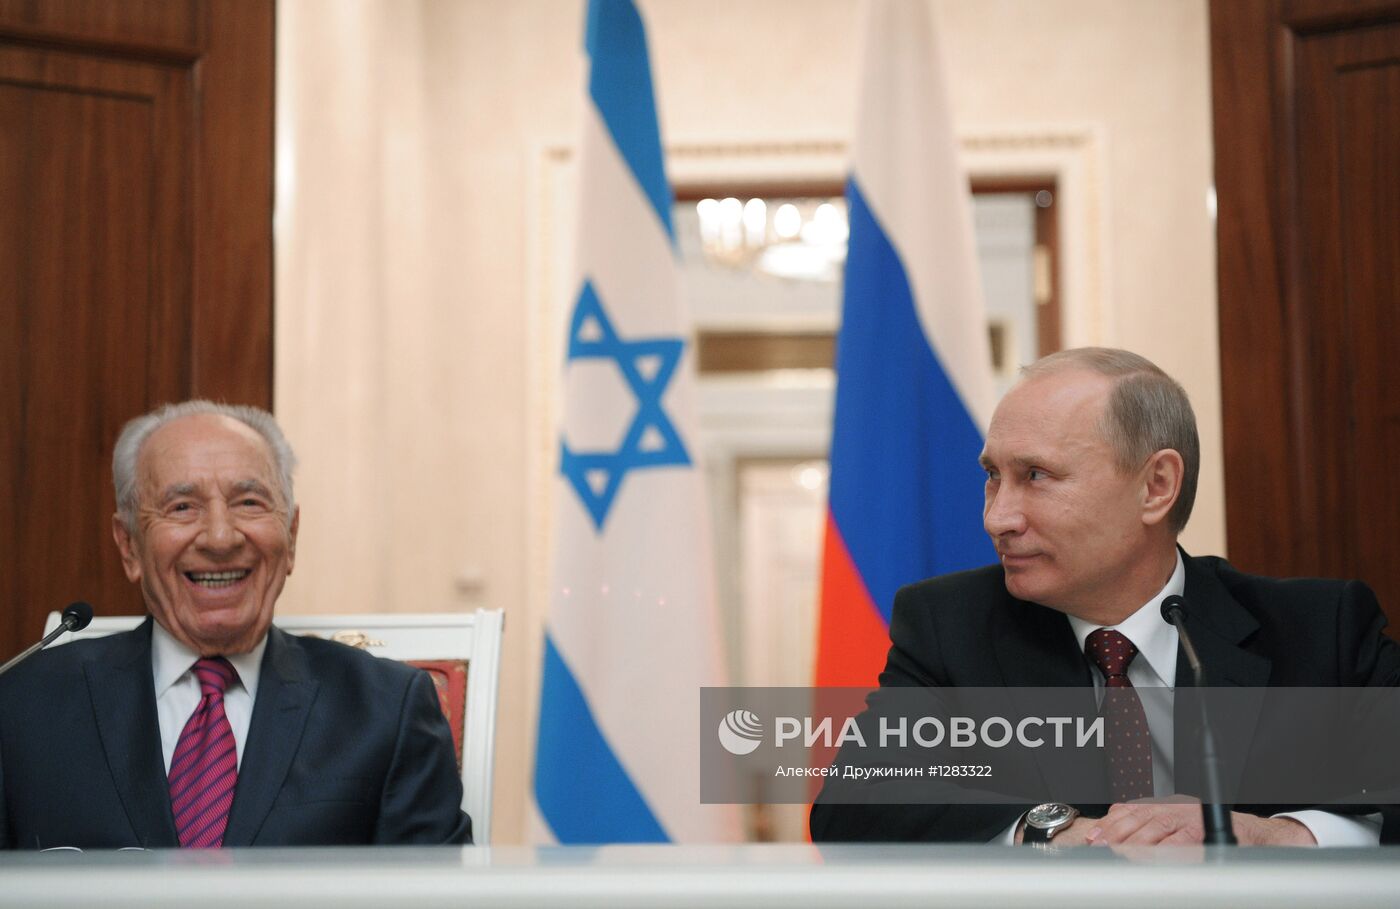 Встреча Владимира Путина и Шимона Переса в Кремле